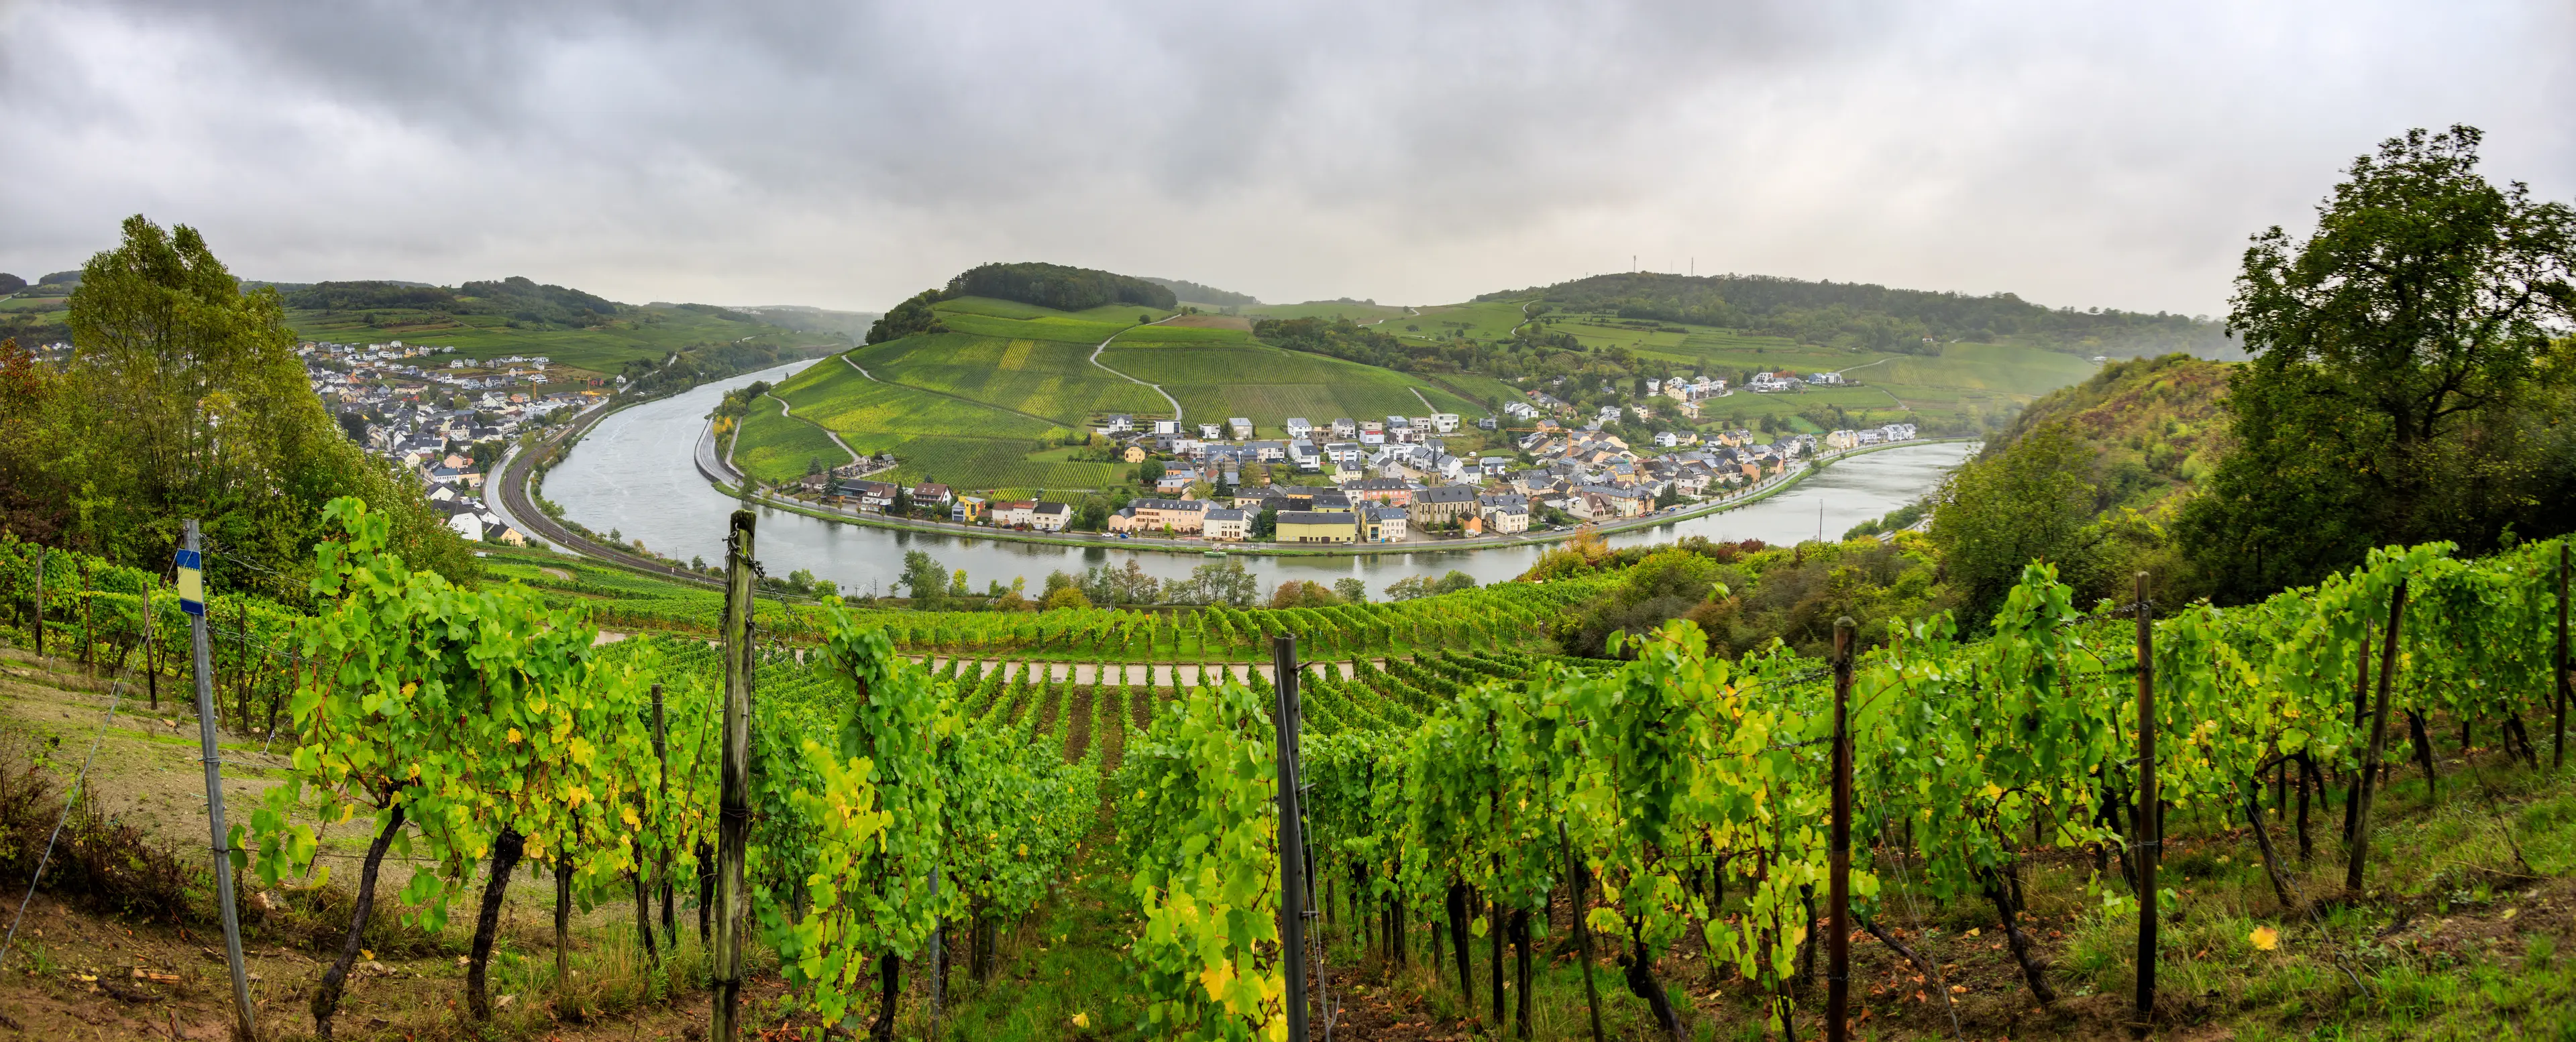 Moselle wine region